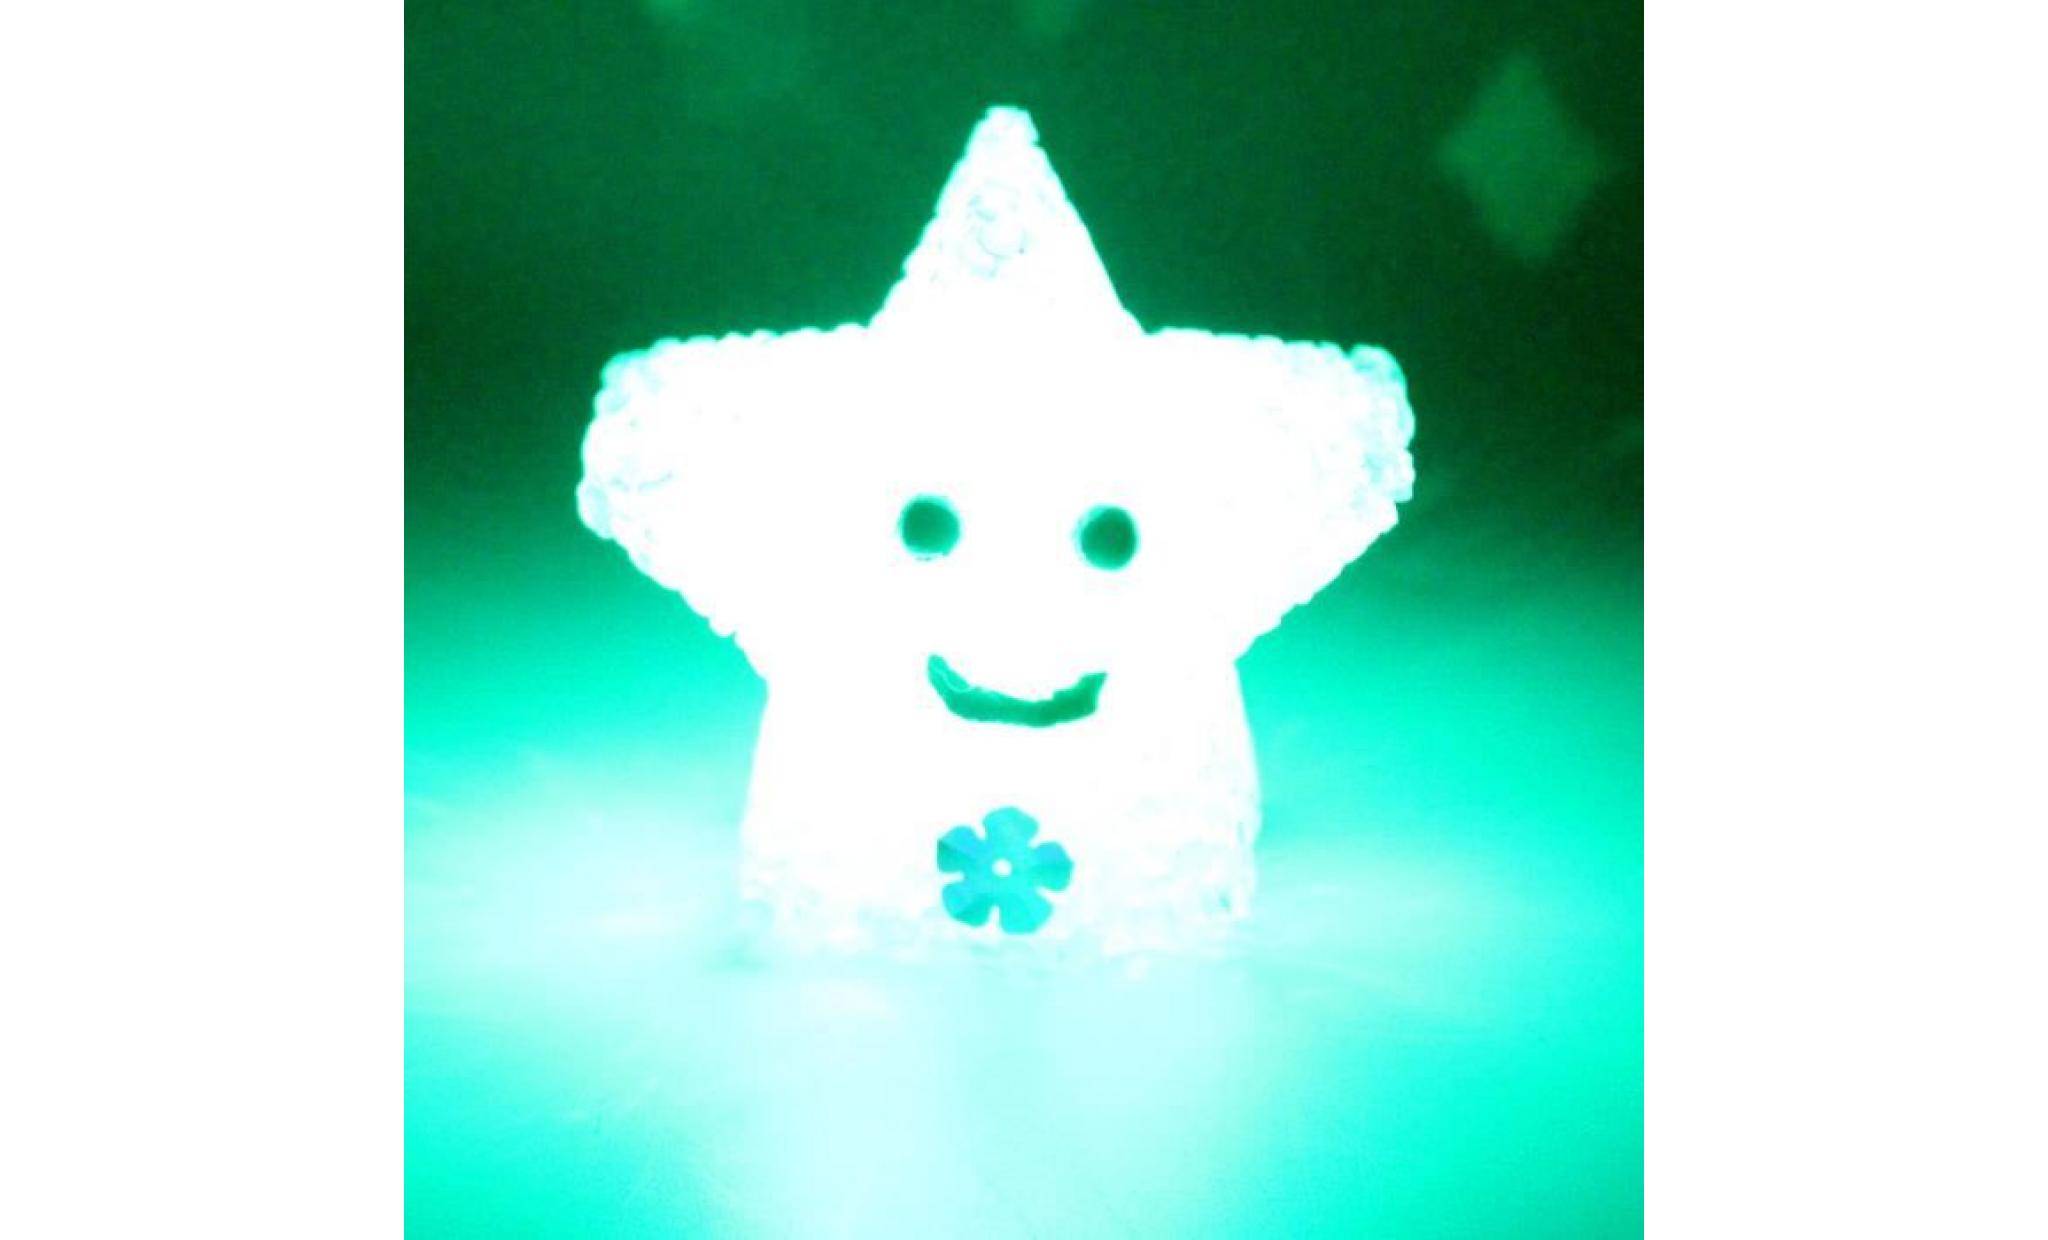 nouveau changement de couleur led light multi color magic nouveauté star smile night lamp@pansy3132 pas cher